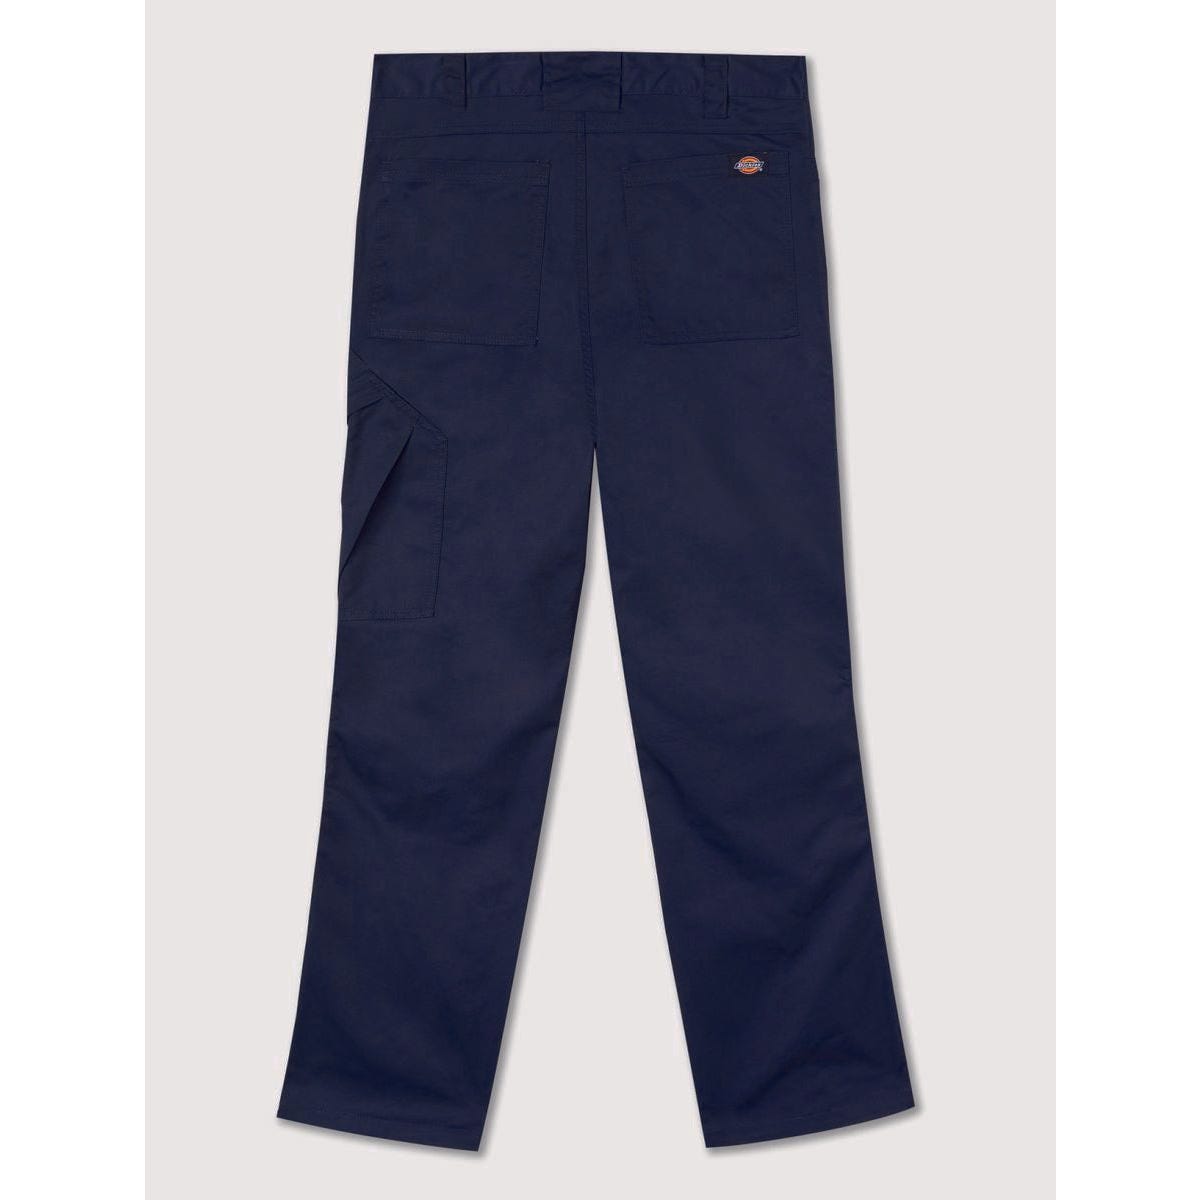 Pantalon de travail Action Flex gris - Dickies - Taille 38 6